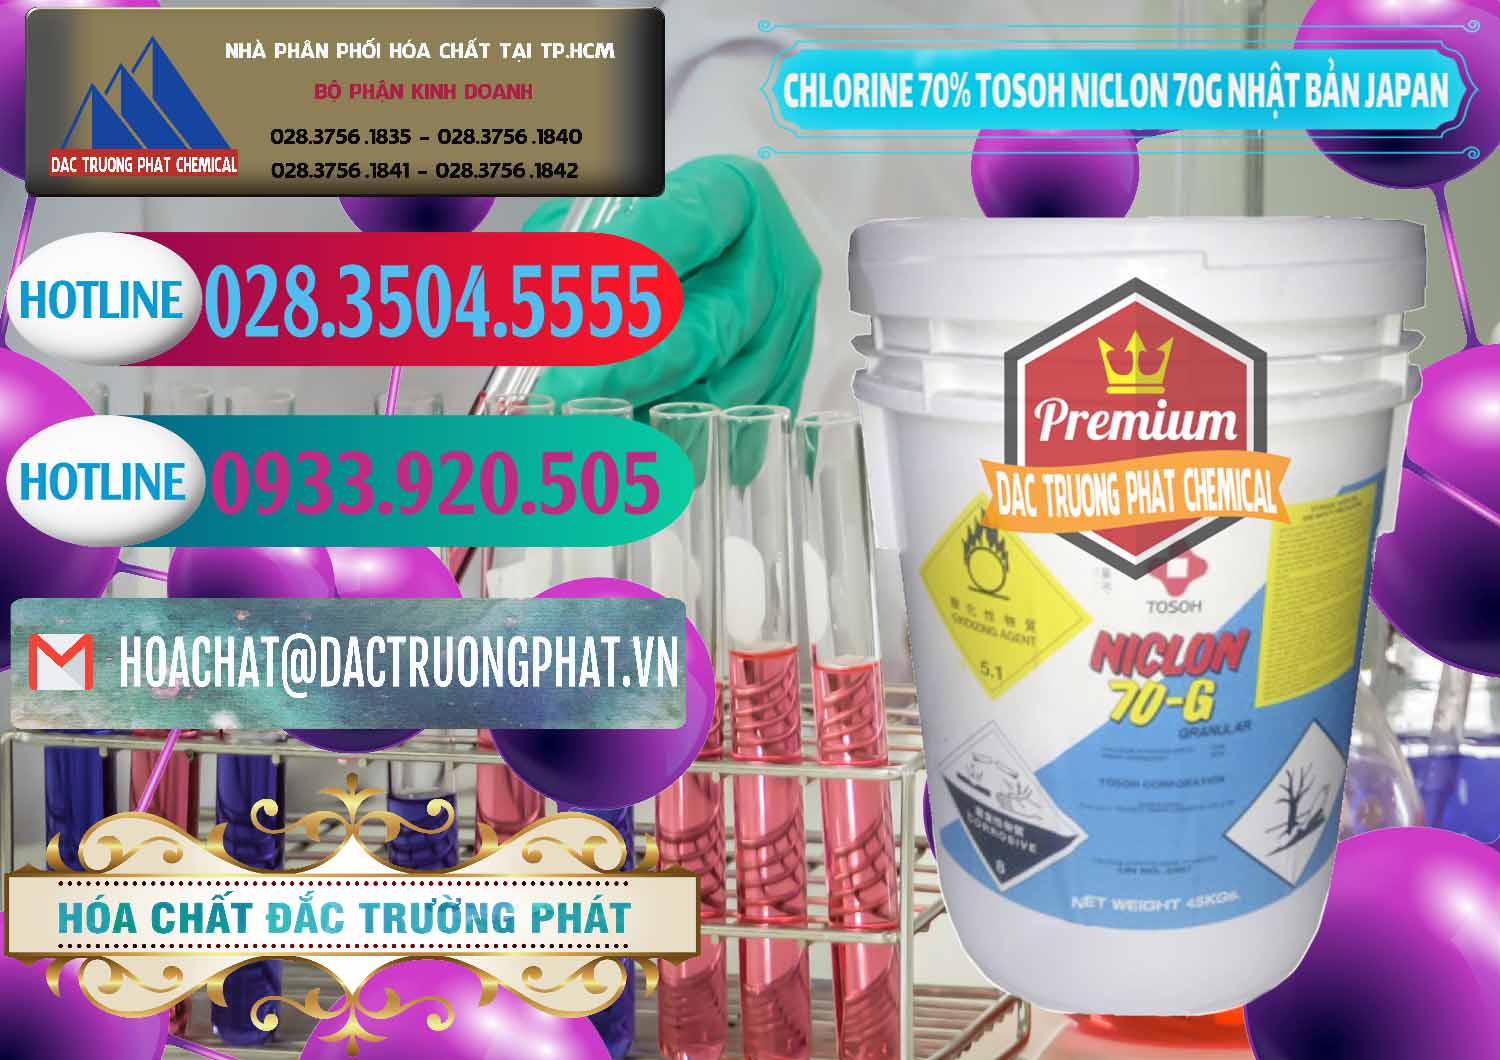 Cty chuyên cung ứng - bán Clorin – Chlorine 70% Tosoh Niclon 70G Nhật Bản Japan - 0242 - Đơn vị bán và phân phối hóa chất tại TP.HCM - truongphat.vn